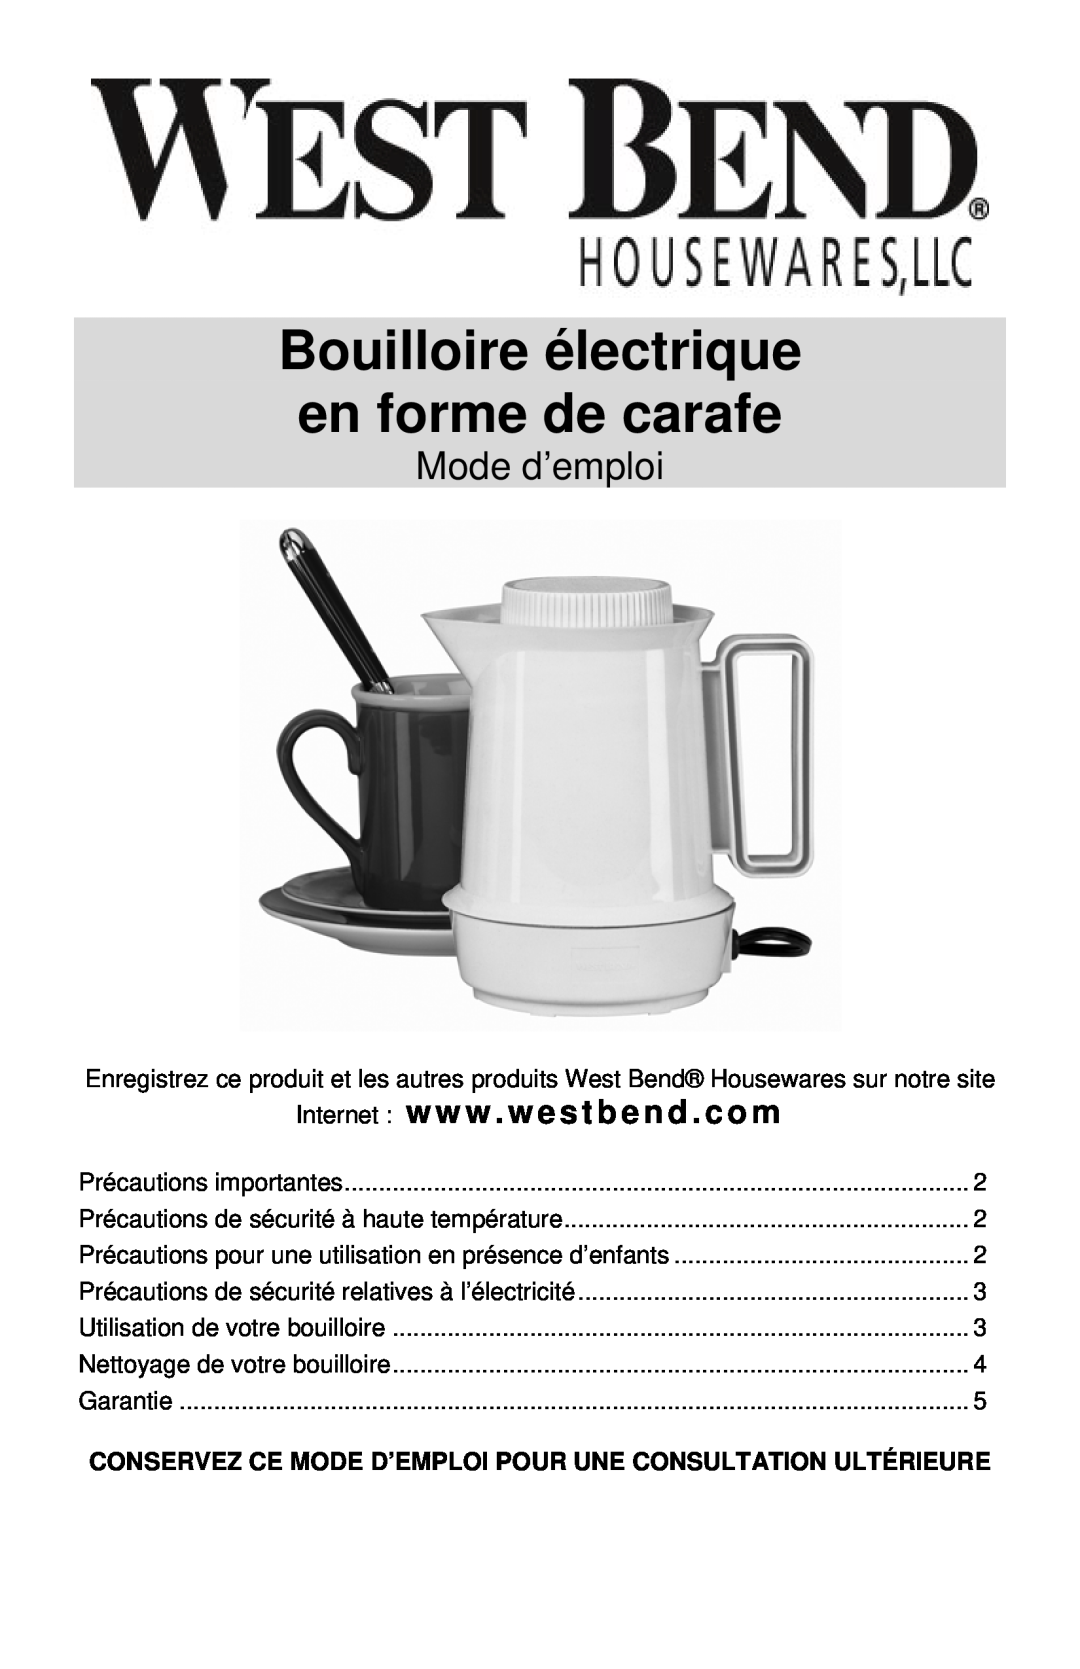 West Bend Electric Hot Pot Mode d’emploi, Internet www . westbend . com, Bouilloire électrique en forme de carafe 